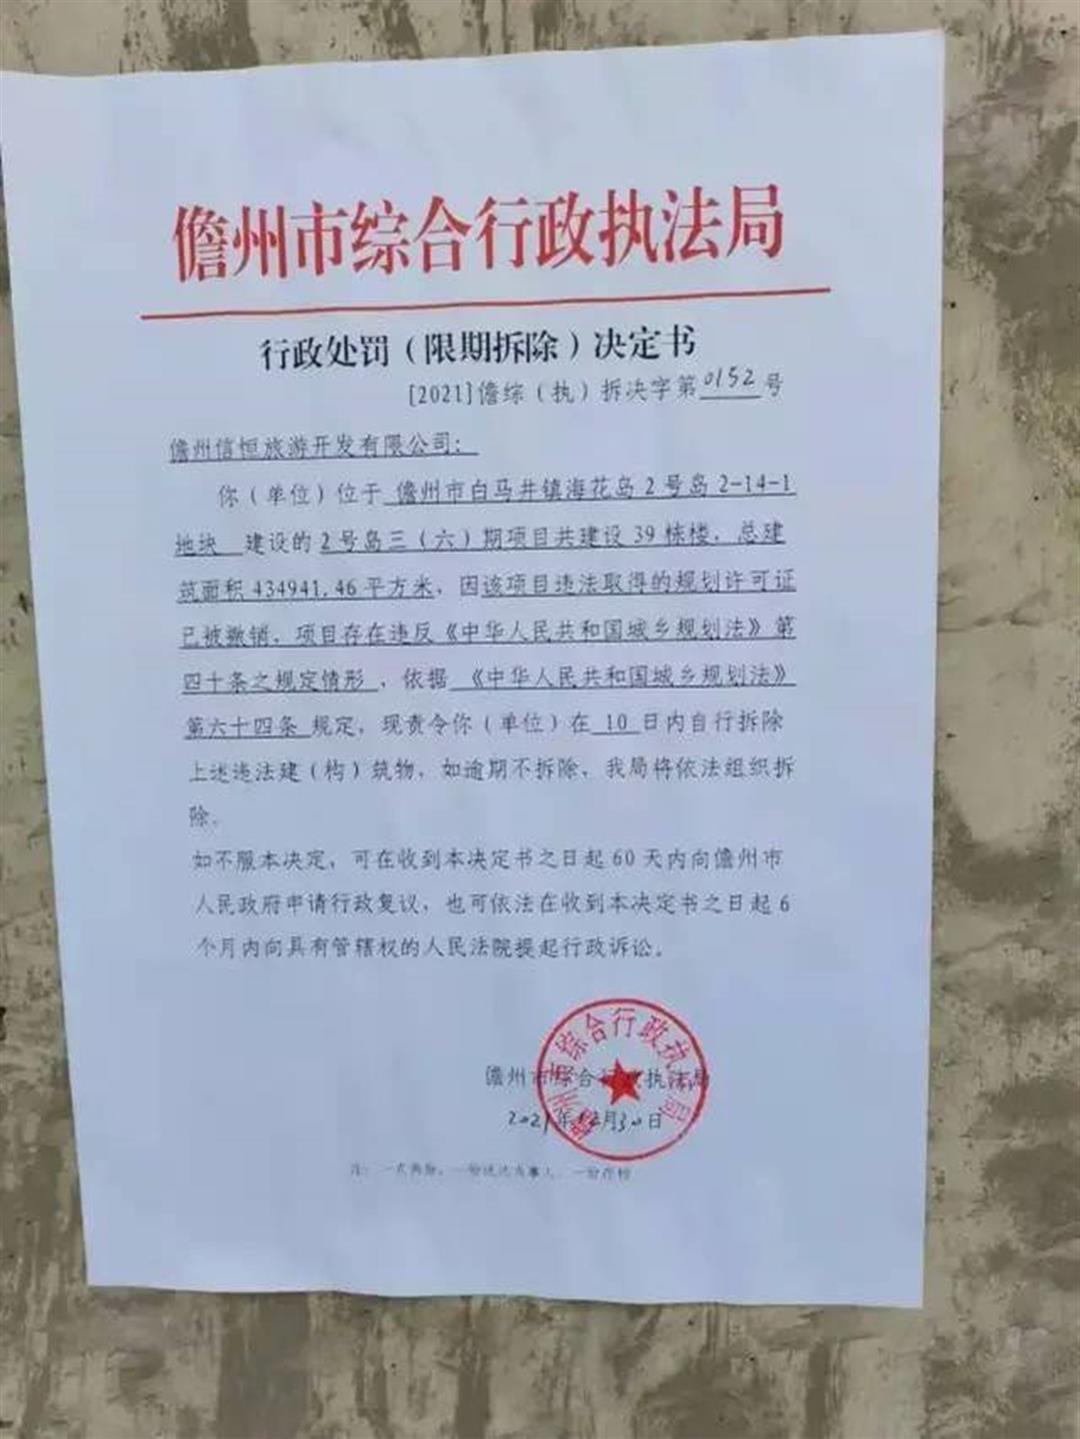 微博流傳海南省儋州市綜合行政執法局發布的行政處罰決定書